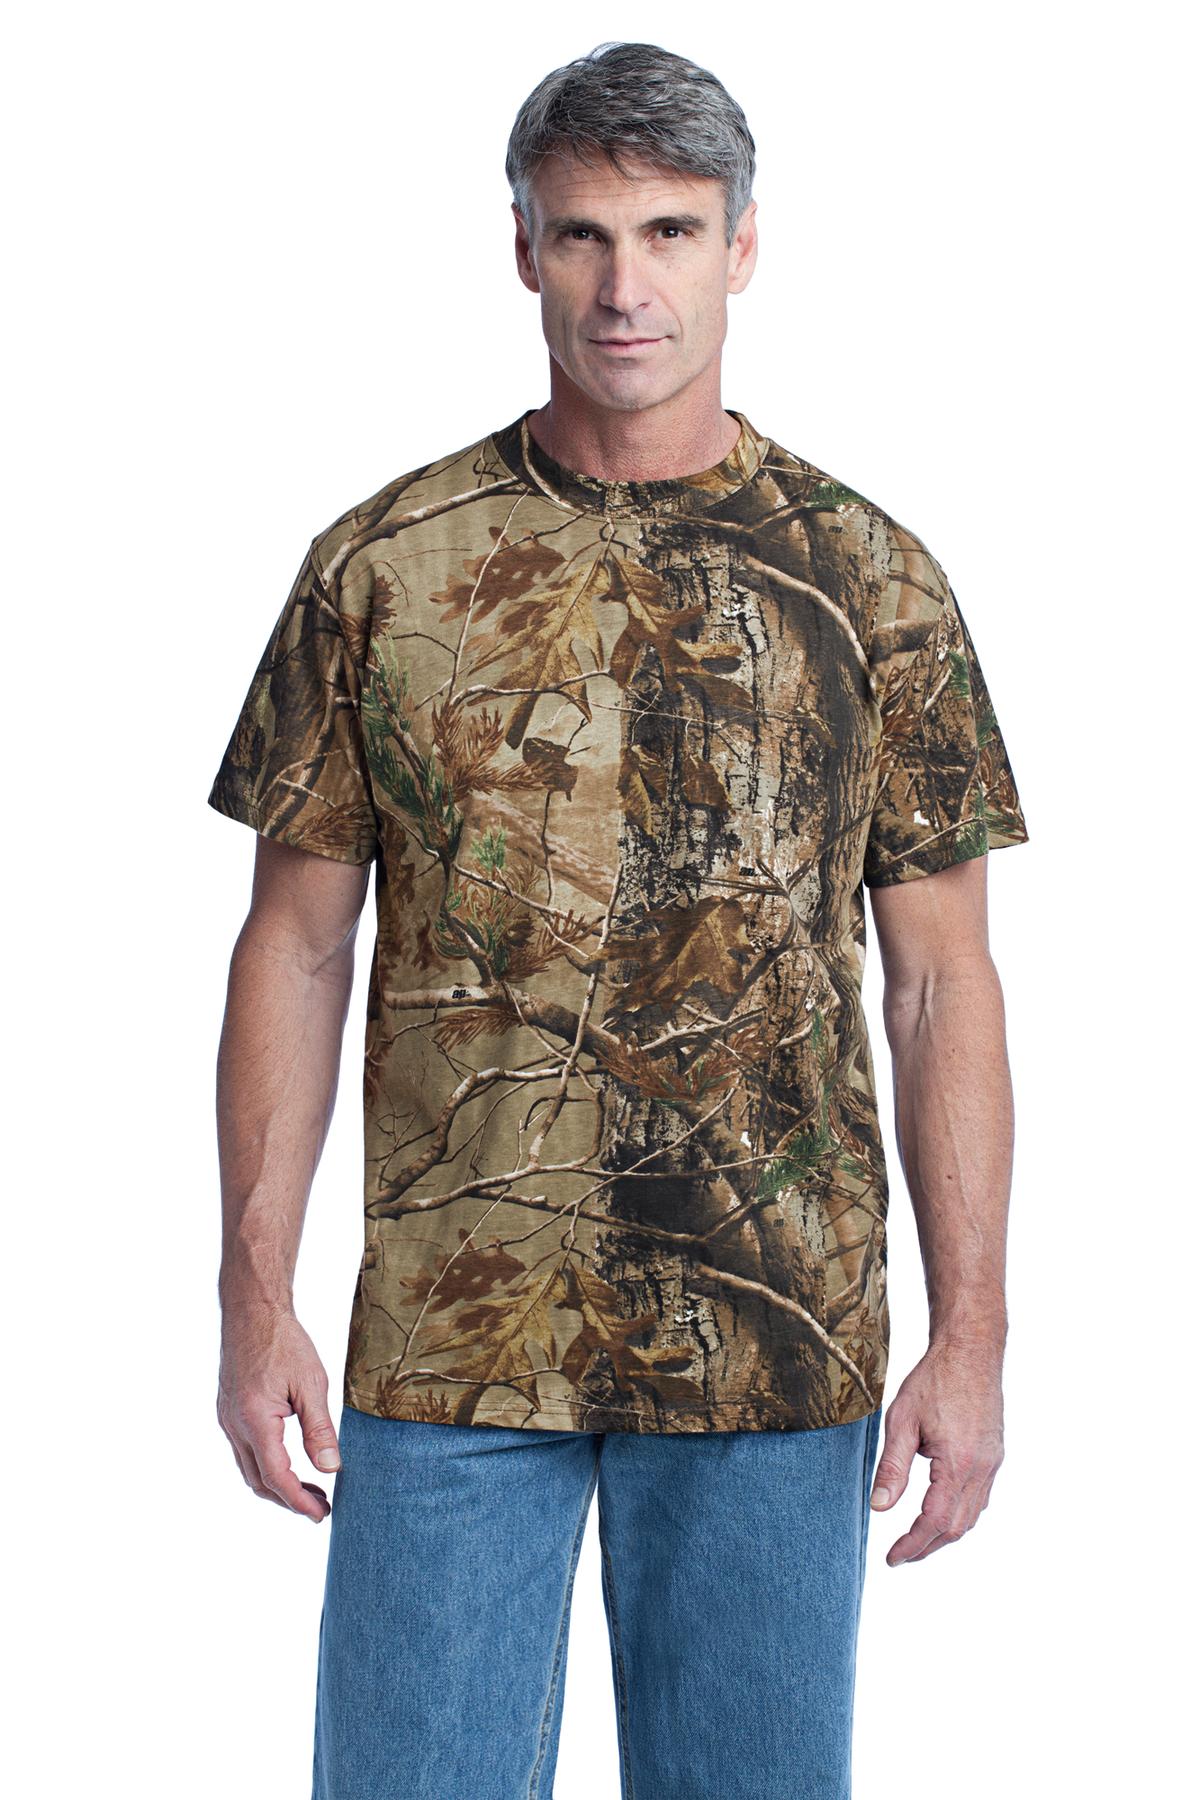 Hanes Men's Explorer Graphic Short-Sleeve 100% Cotton T-Shirt